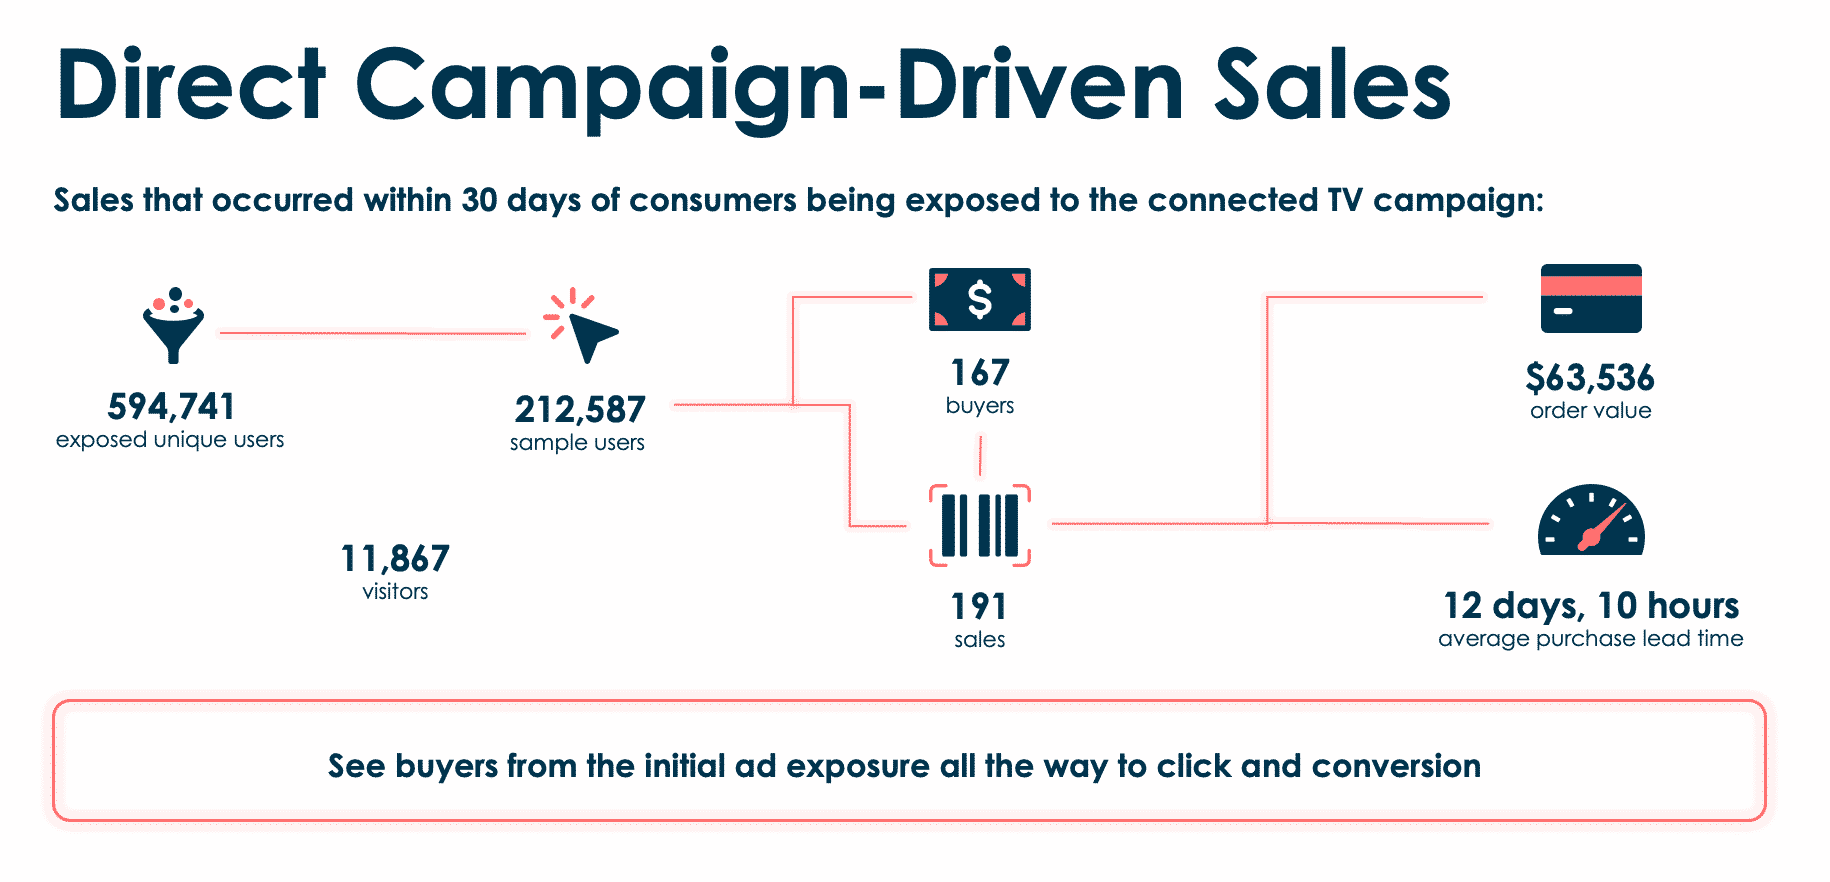 圖表顯示了在消費者接觸聯網電視活動後 30 天內發生的銷售額。